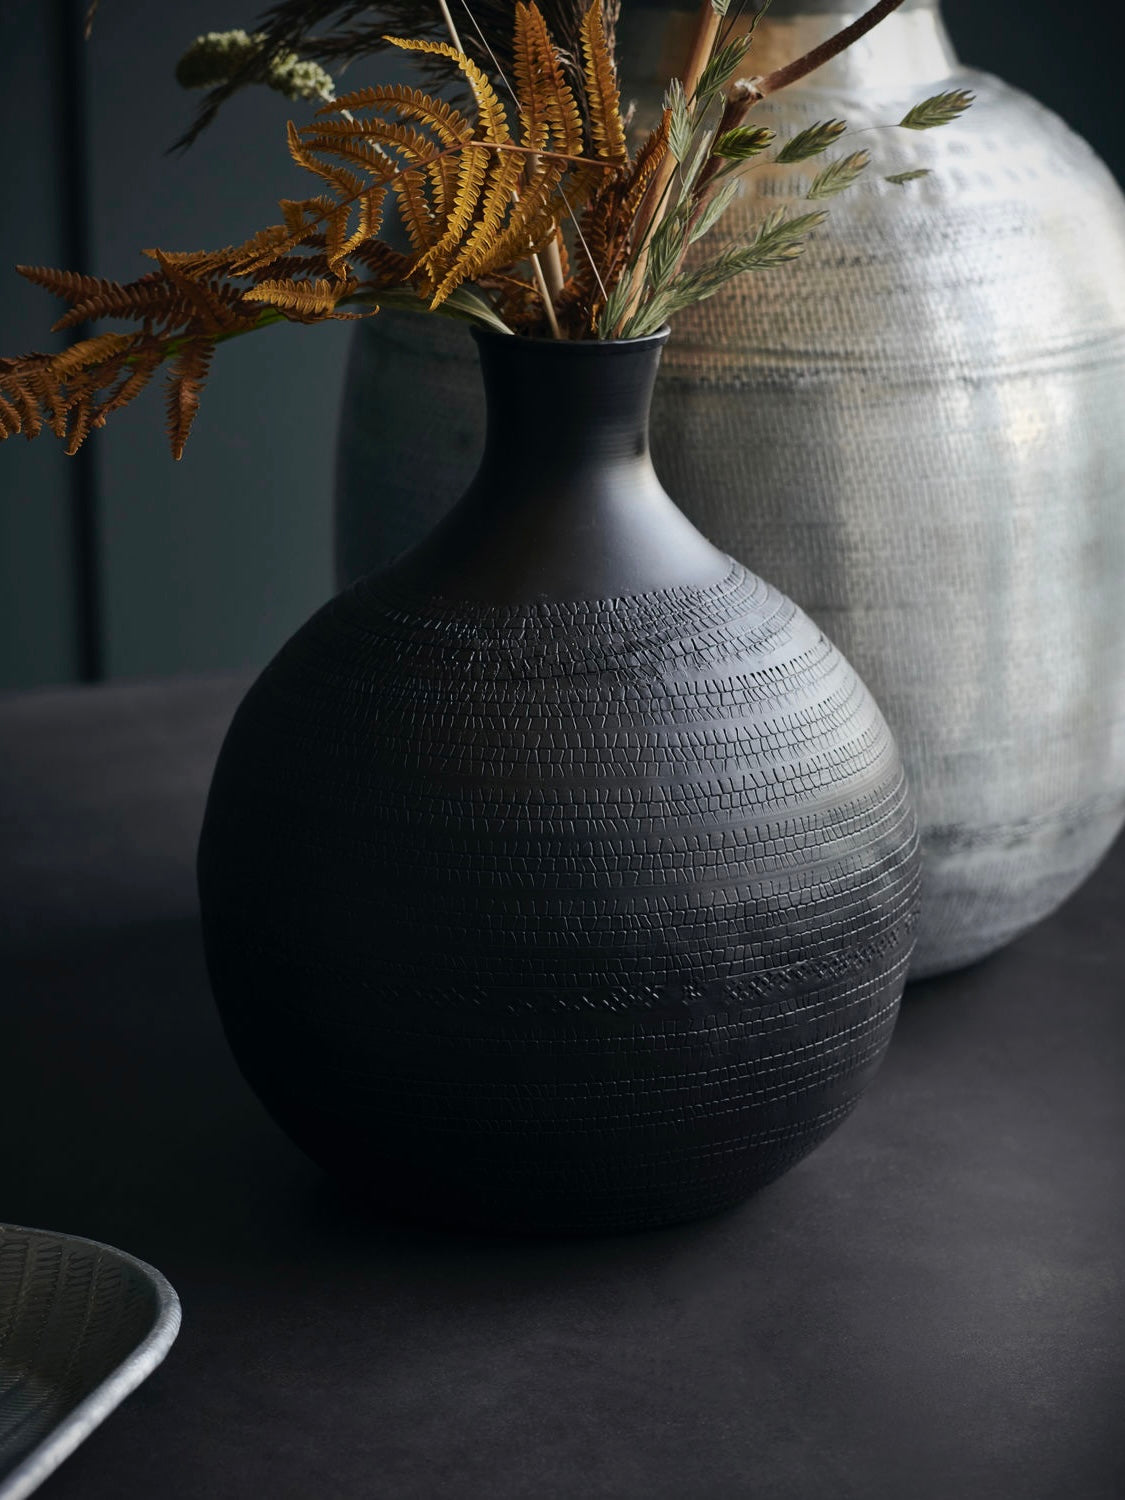 Vase HDReena braun, in zwei Größen